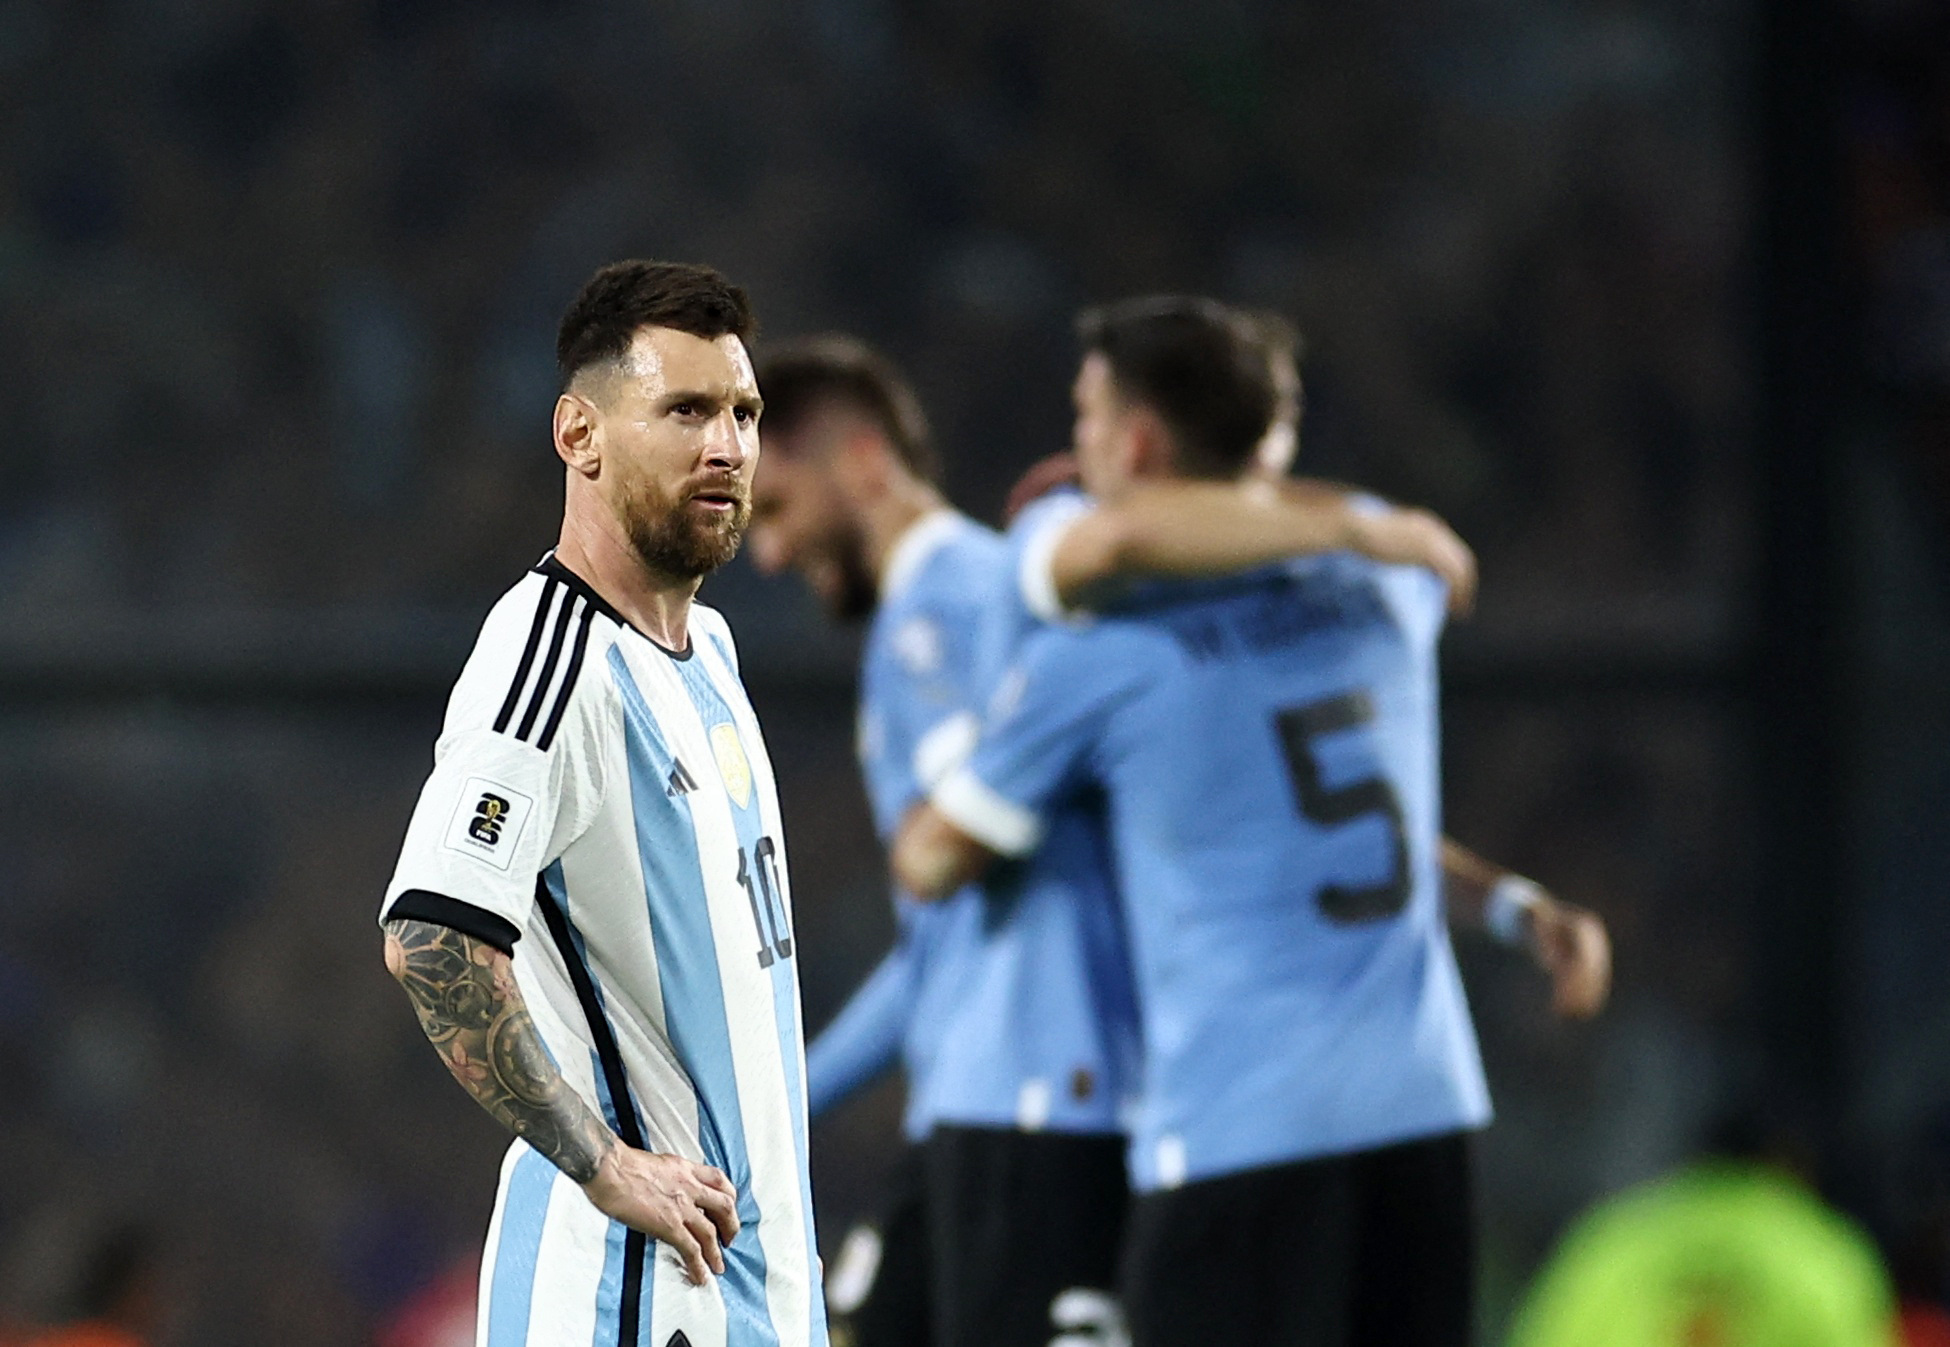 Uruguay vence en un tenso partido a Argentina, y Messi lanza un